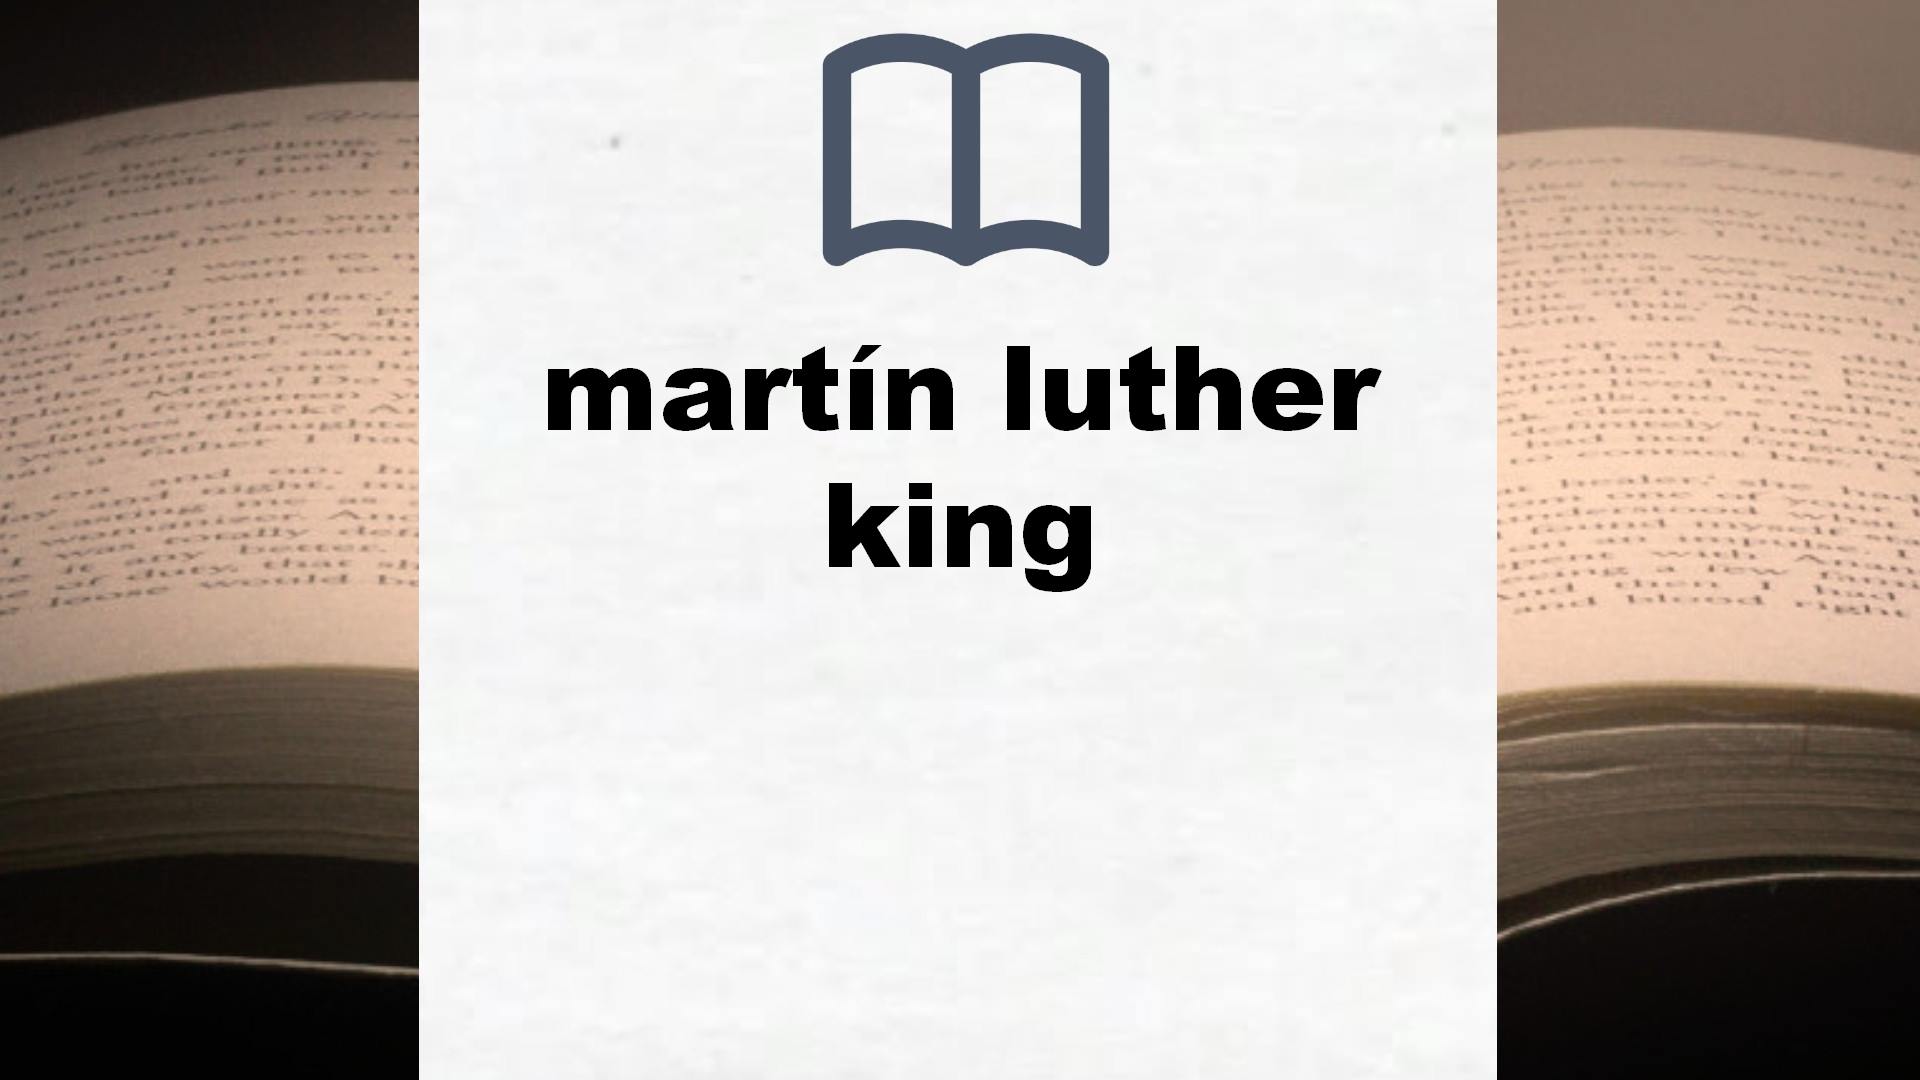 Libros sobre martín luther king